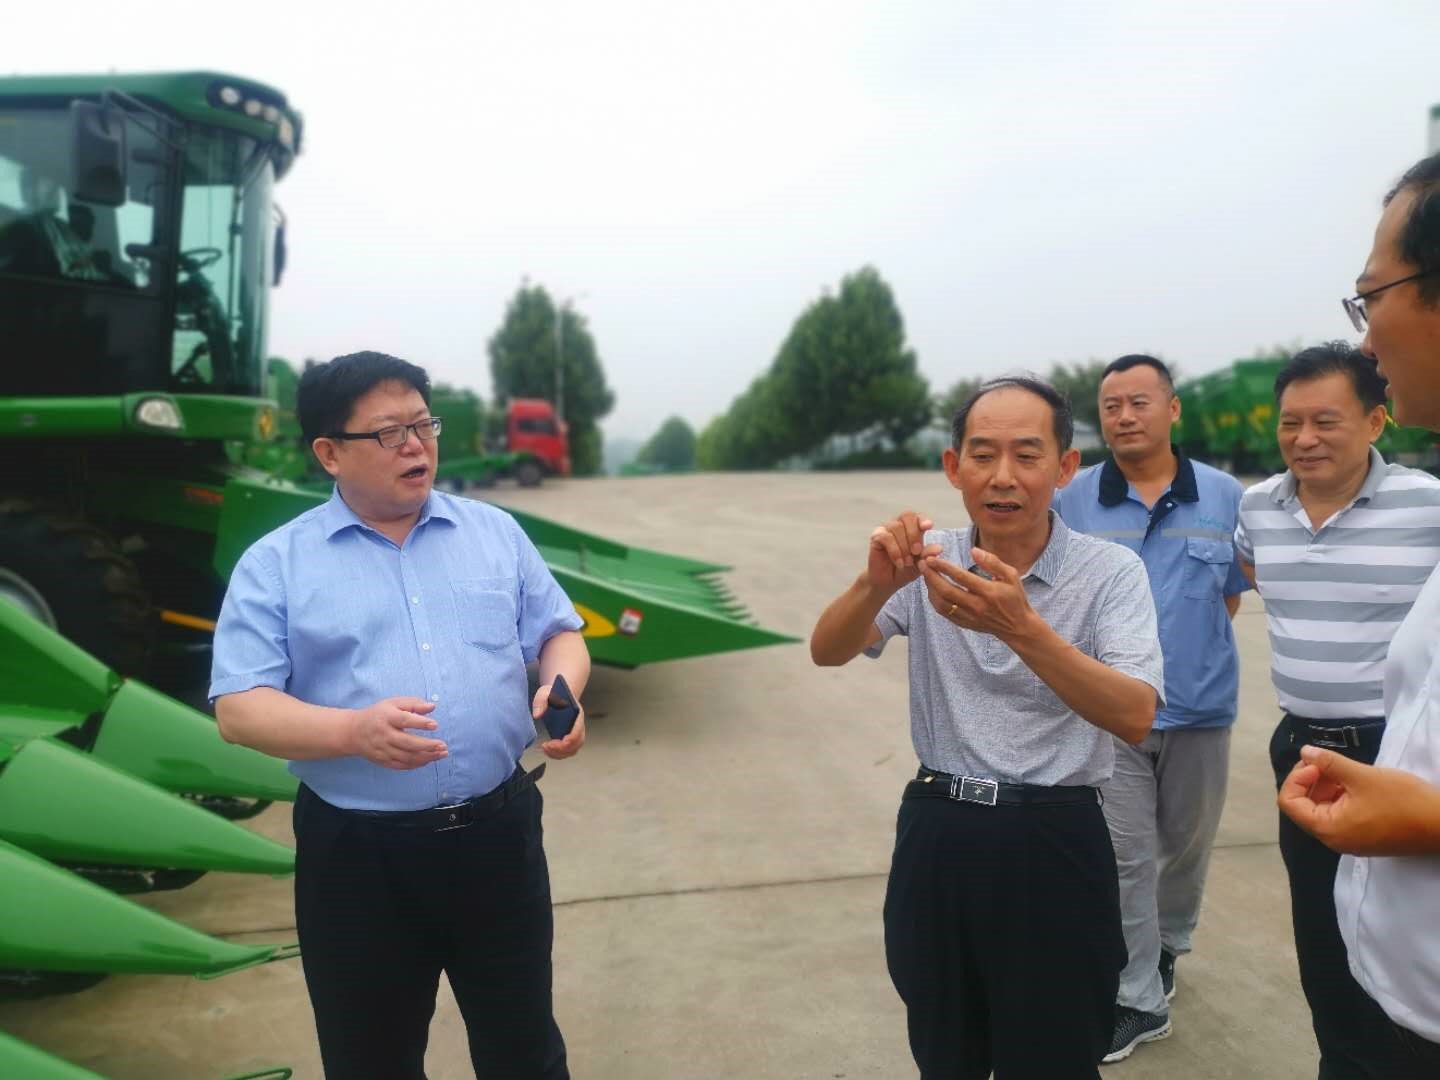 “科创中国”中国农业机械学会国家农机装备科技服务团在山东开展系列科技服务